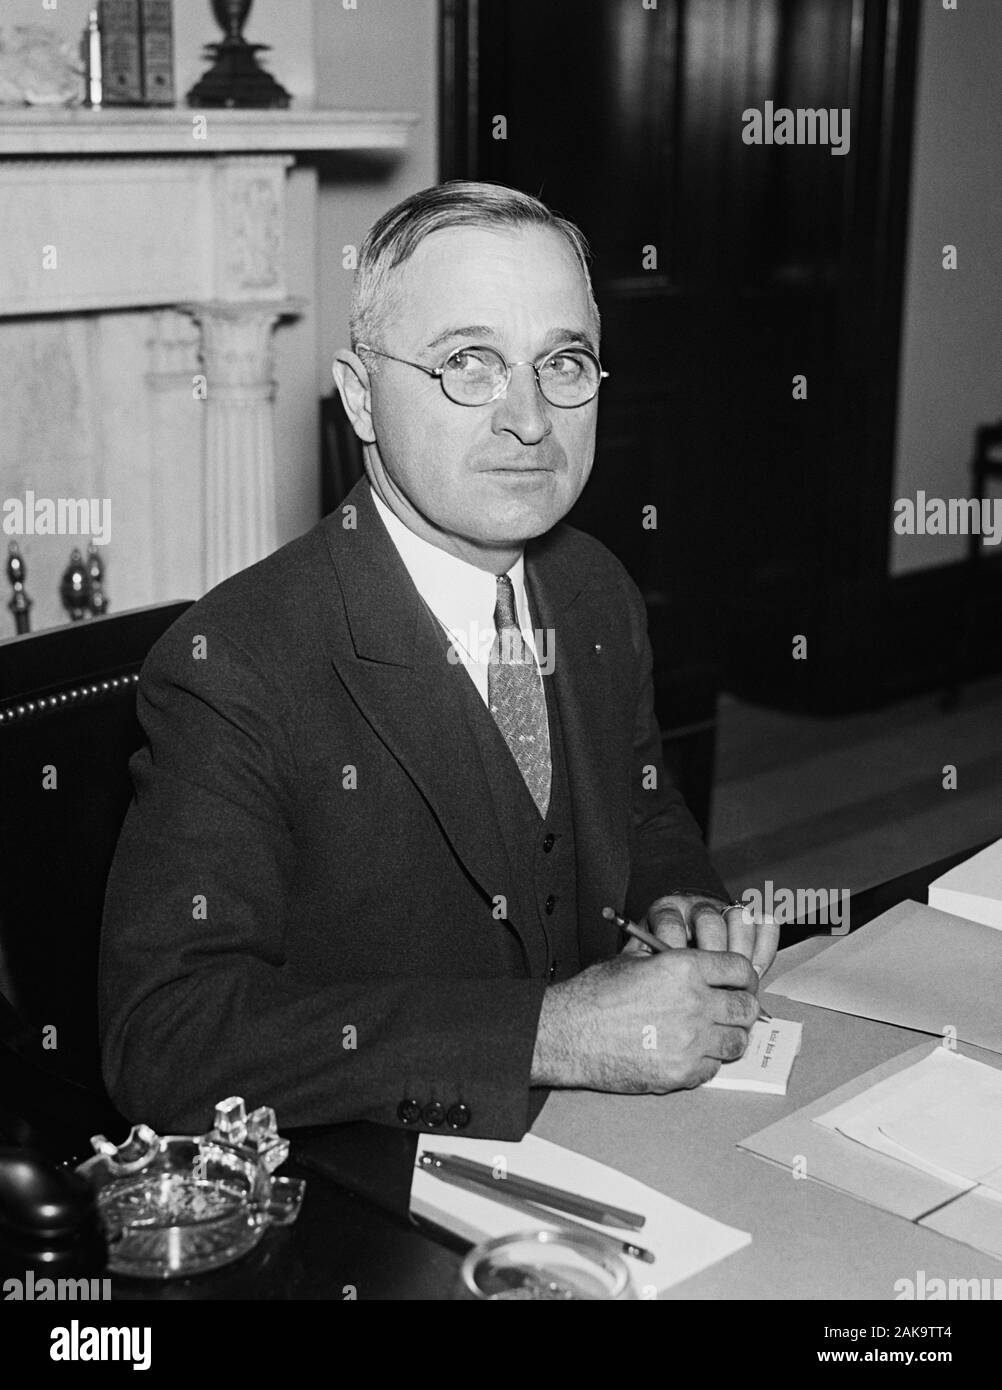 Jahrgang Porträt Foto von Missouri Senator - und künftige Präsident Harry S Truman. Foto ca. 1935 von Harris & Ewing. Truman (1884-1972) später in der 33., US-Präsident (1945 - 1953). Stockfoto